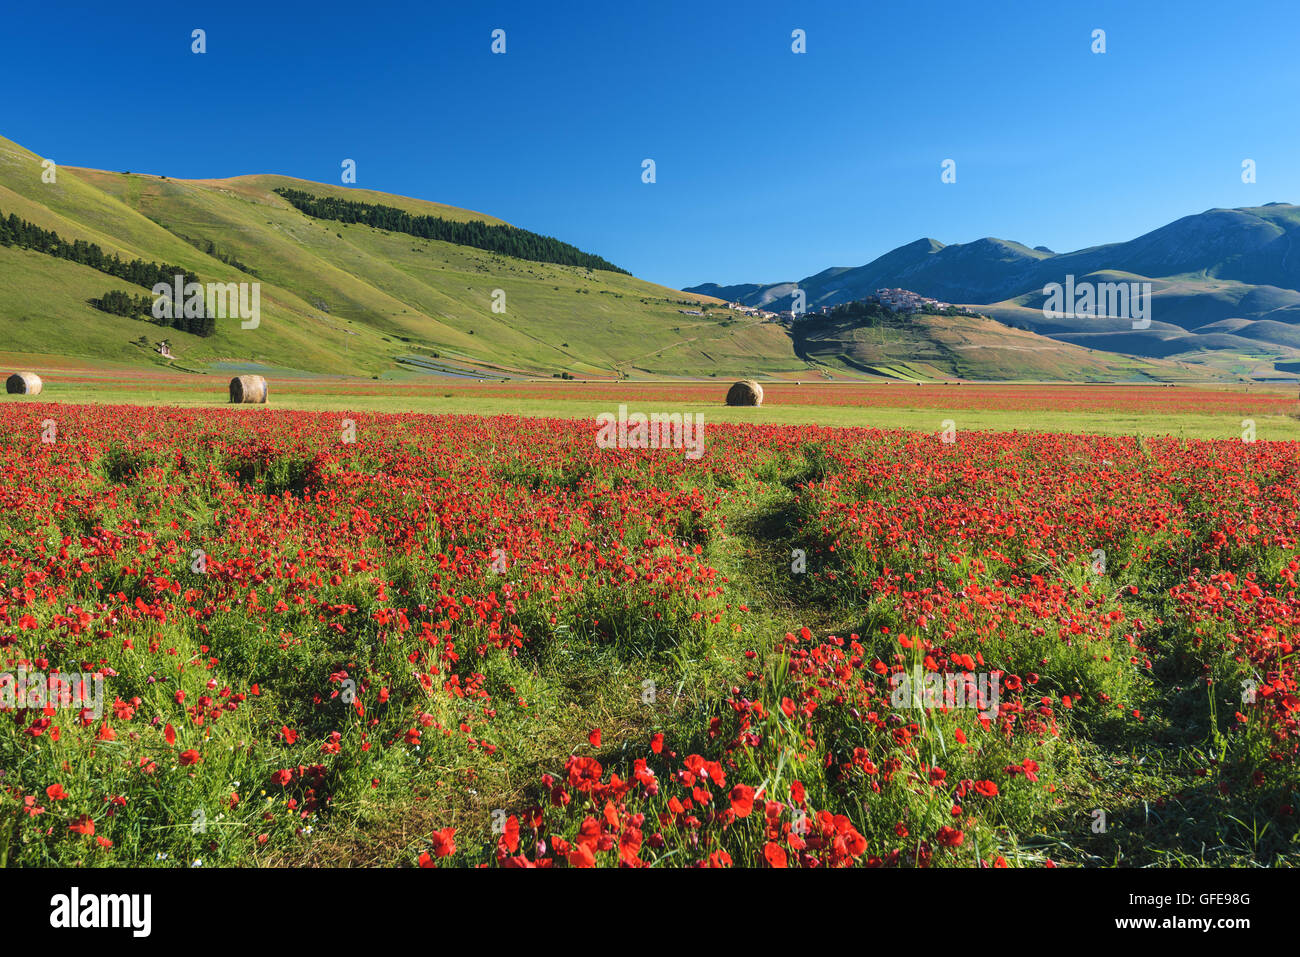 Coquelicots rouges floraison durant une journée d'été en Ombrie, Italie. Banque D'Images